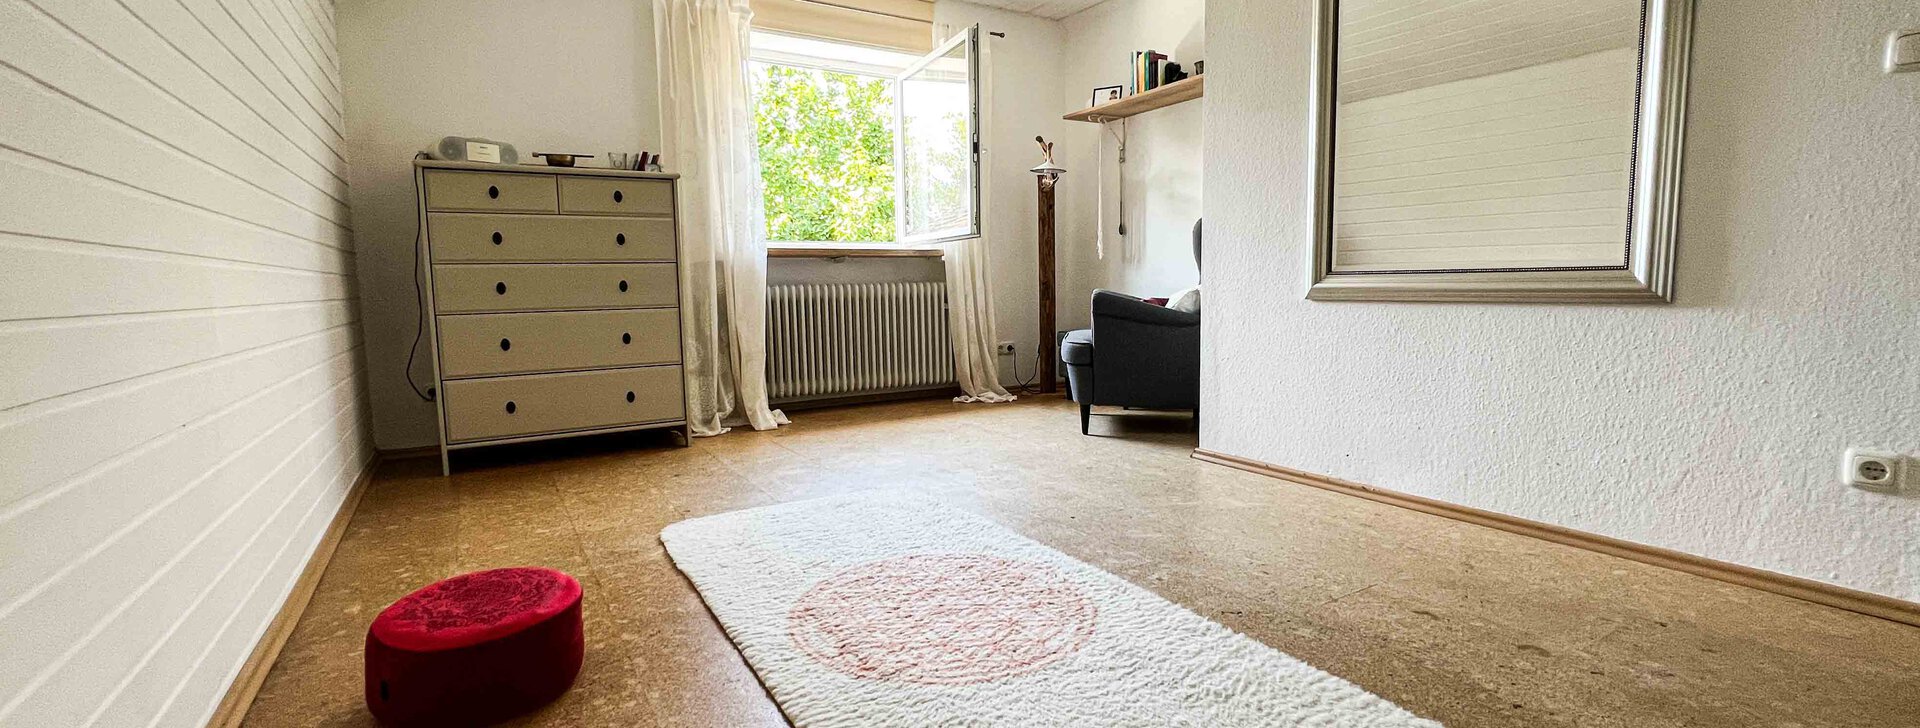 Schlafzimmer, Einfamilienhaus in Traunreut, Immobilie kaufen, Traunreut  | © HausBauHaus GmbH 